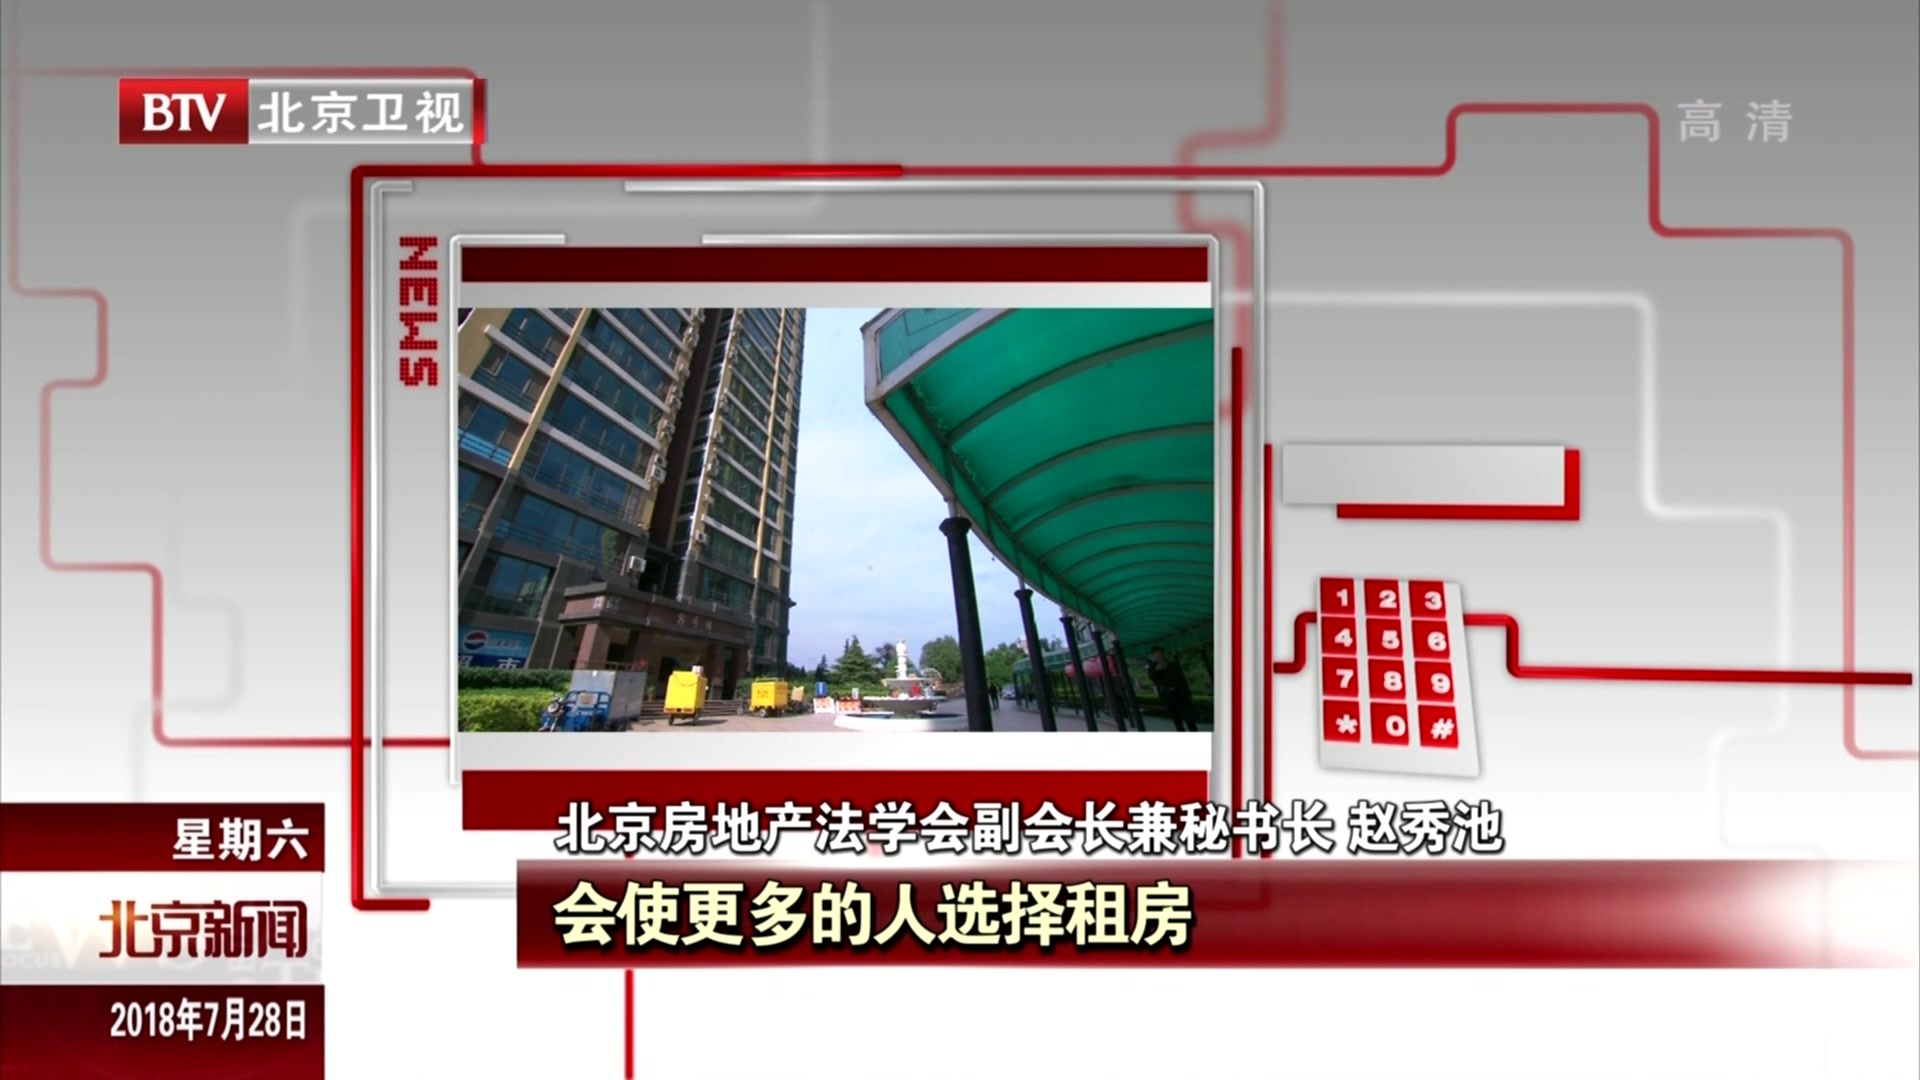 北京新版租房合同征求意见  租期内房东不得单方面涨租金